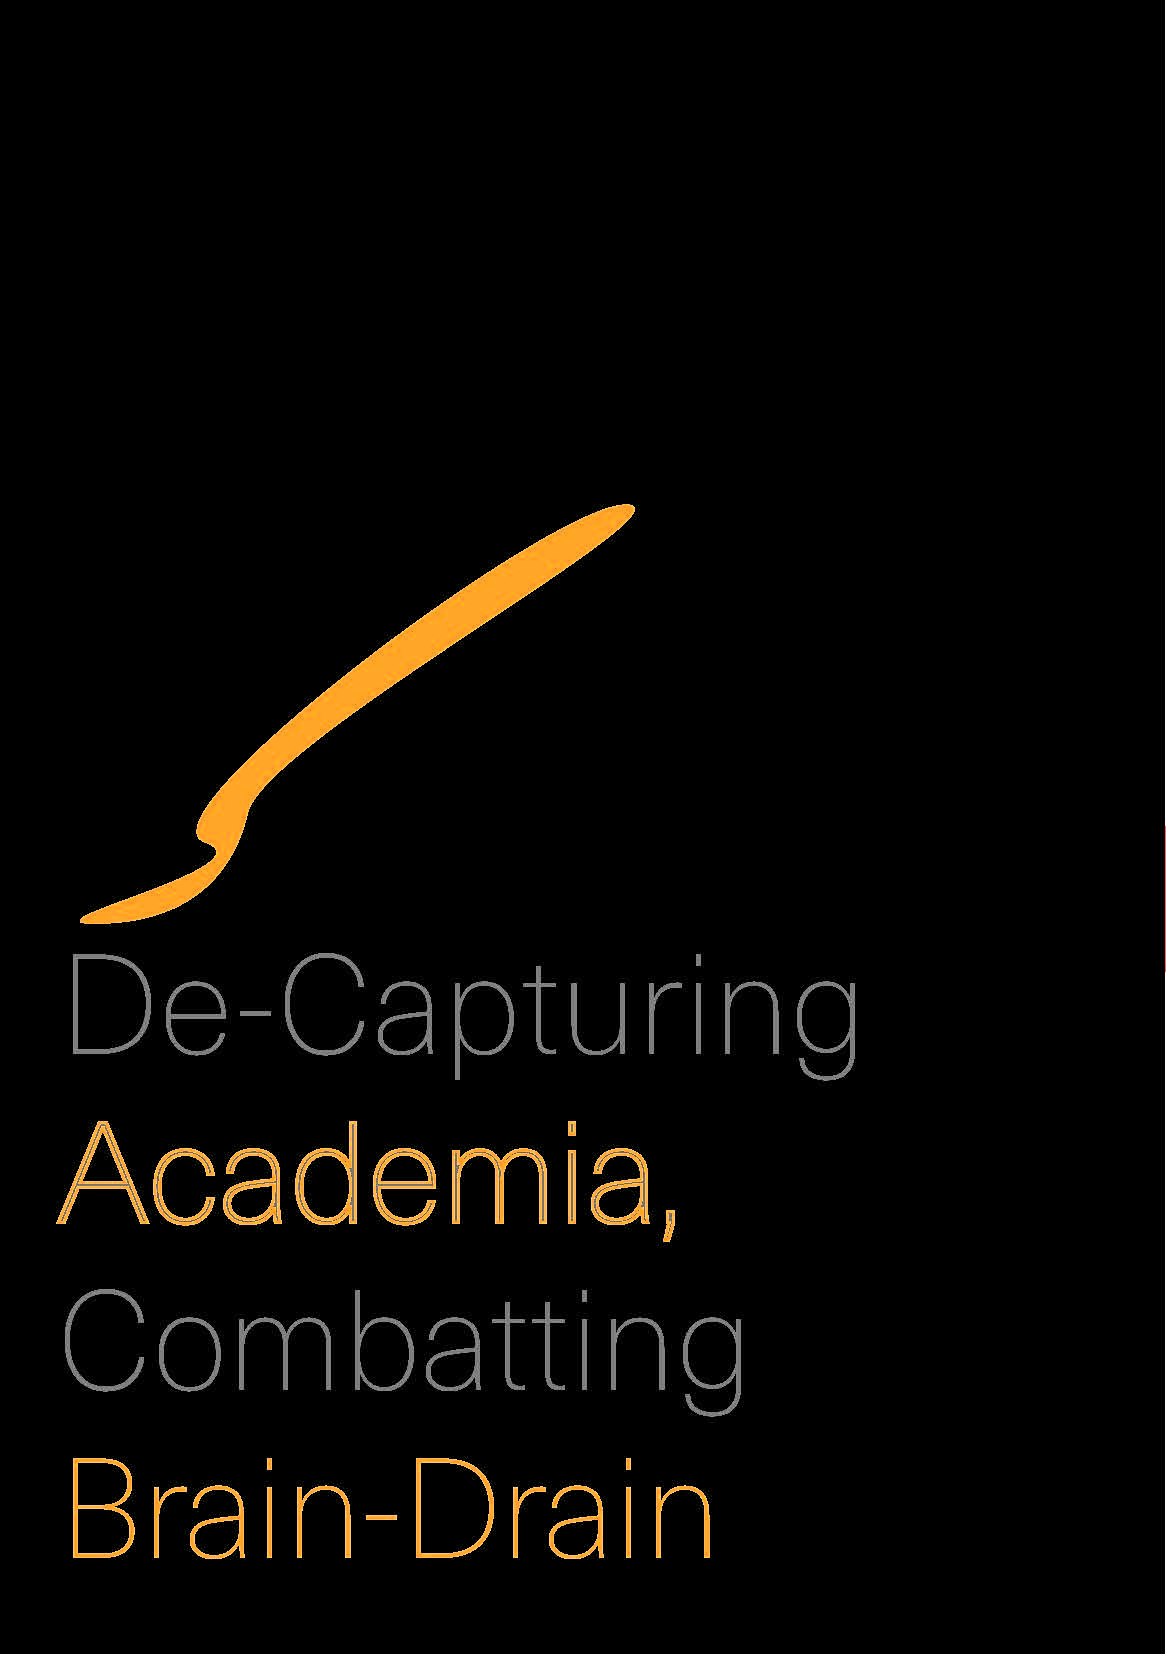 De-Capturing Academia, Combatting Brain-Drain Cover Image